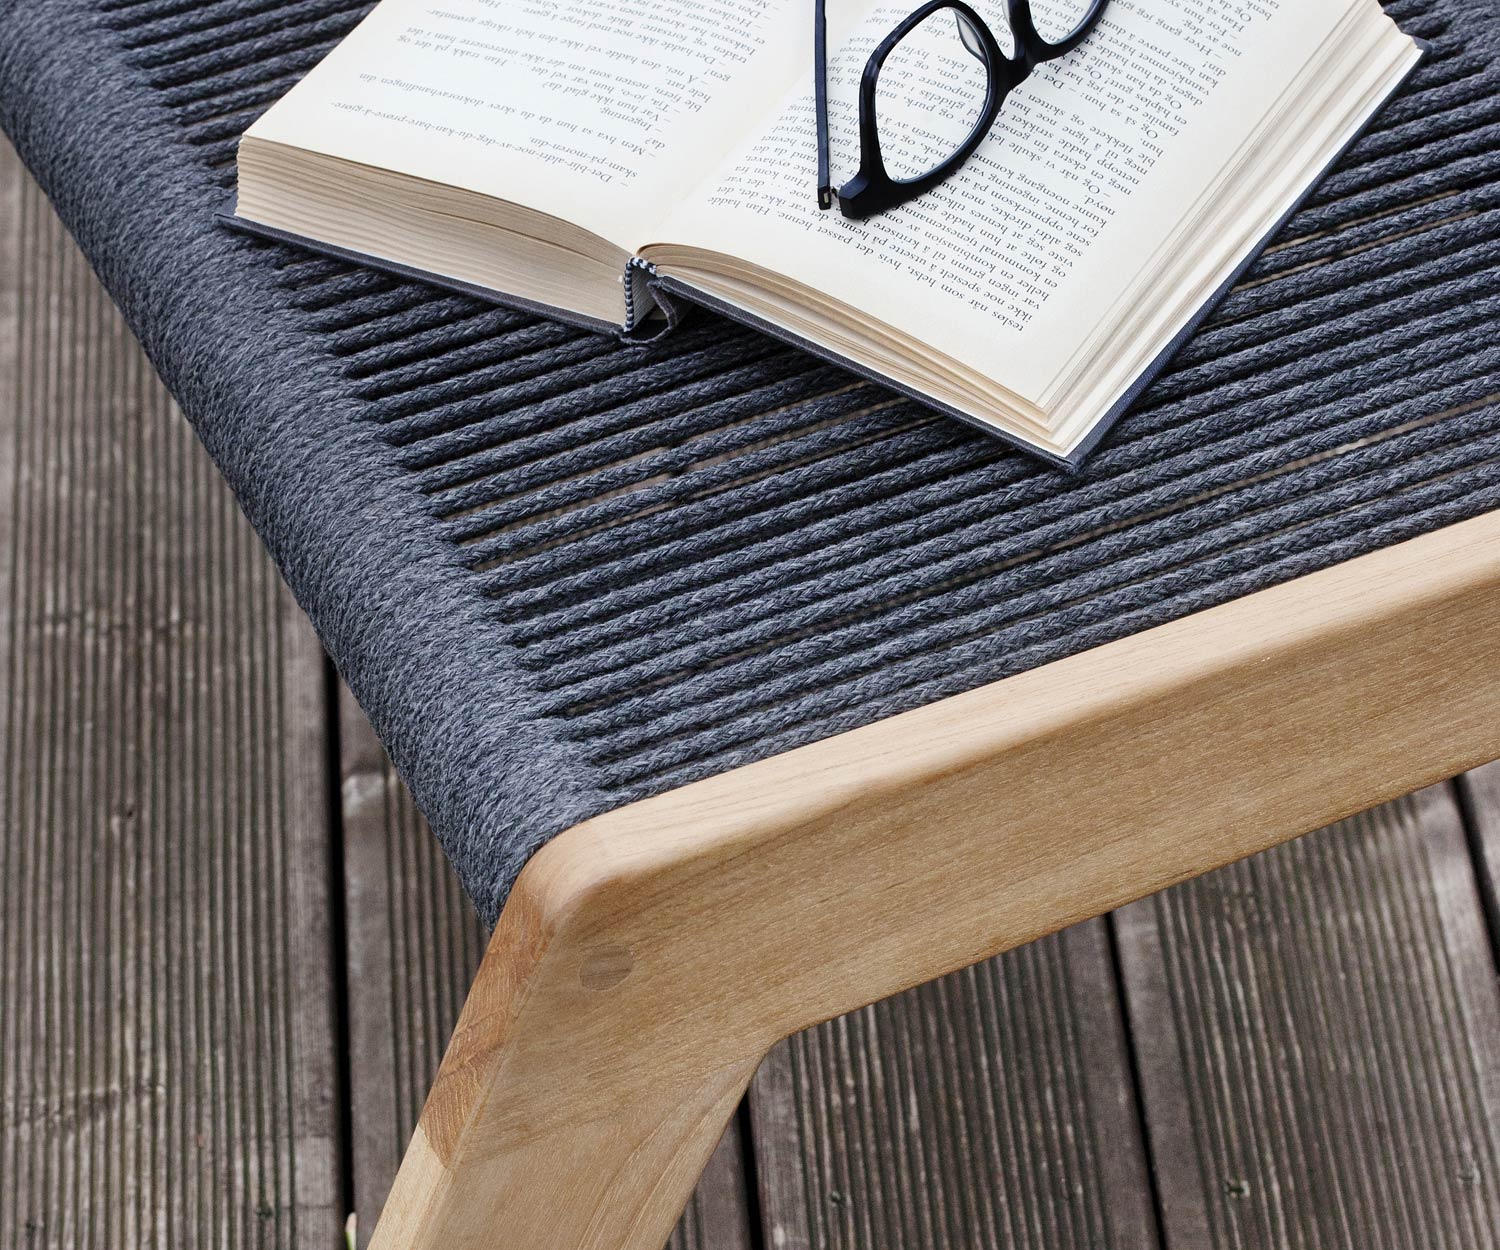 Oasiq Skagen design kruk met gestoffeerd kussen in donkergrijs voor ligstoel